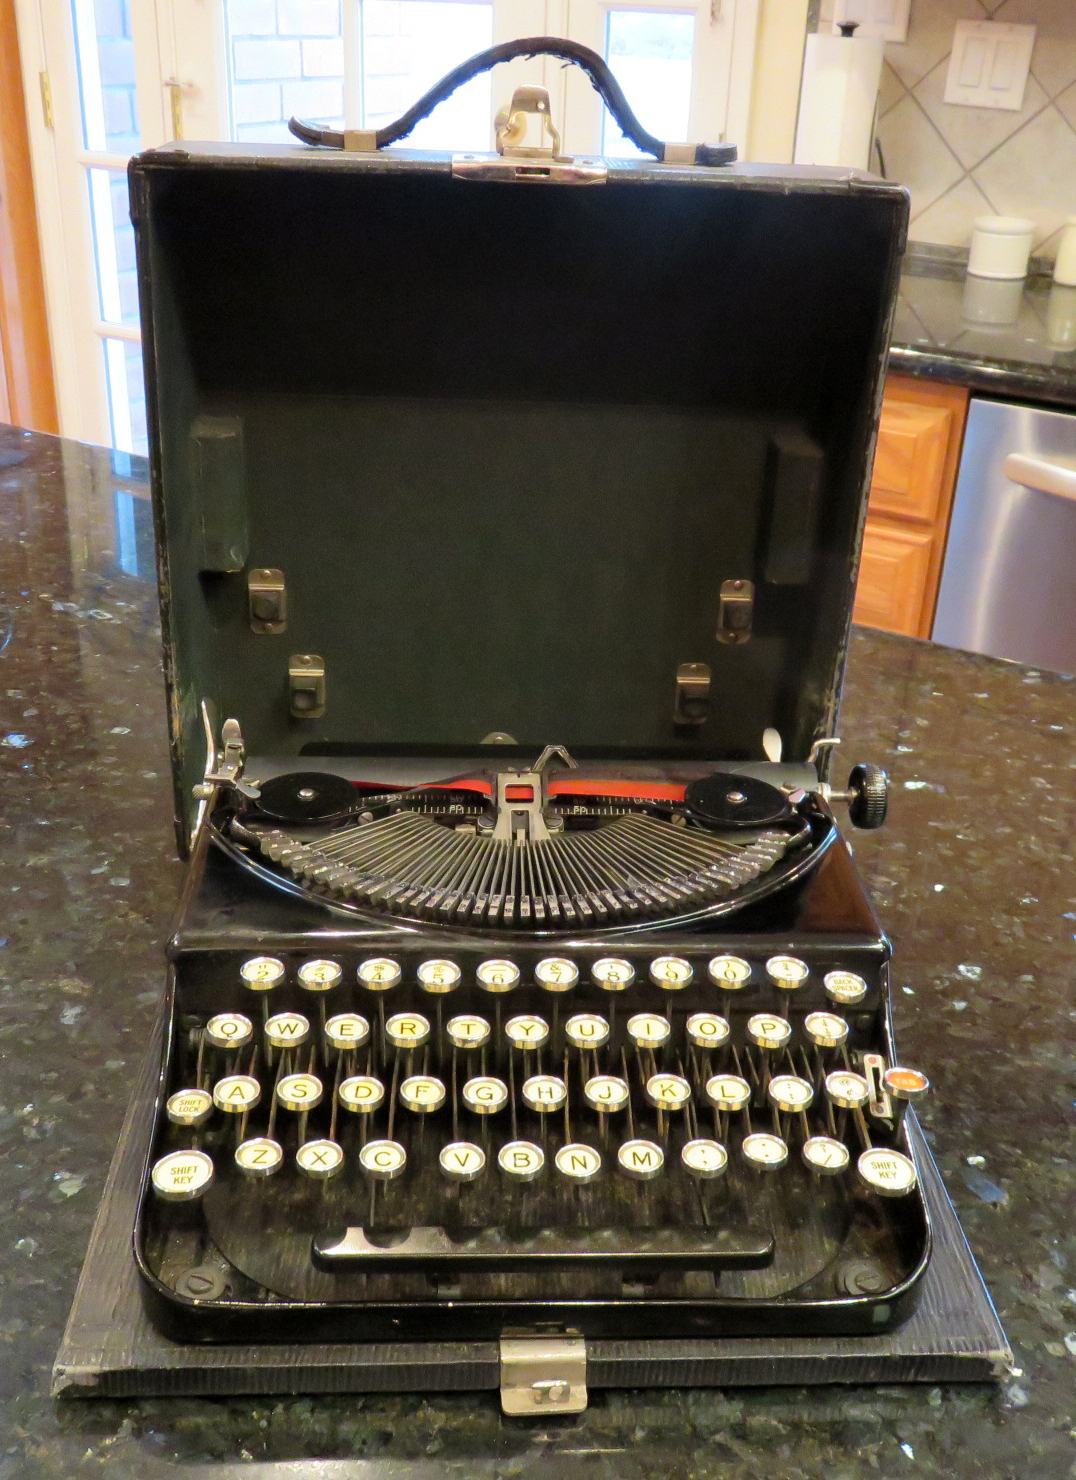 Remington No 2 Typewriter 1928